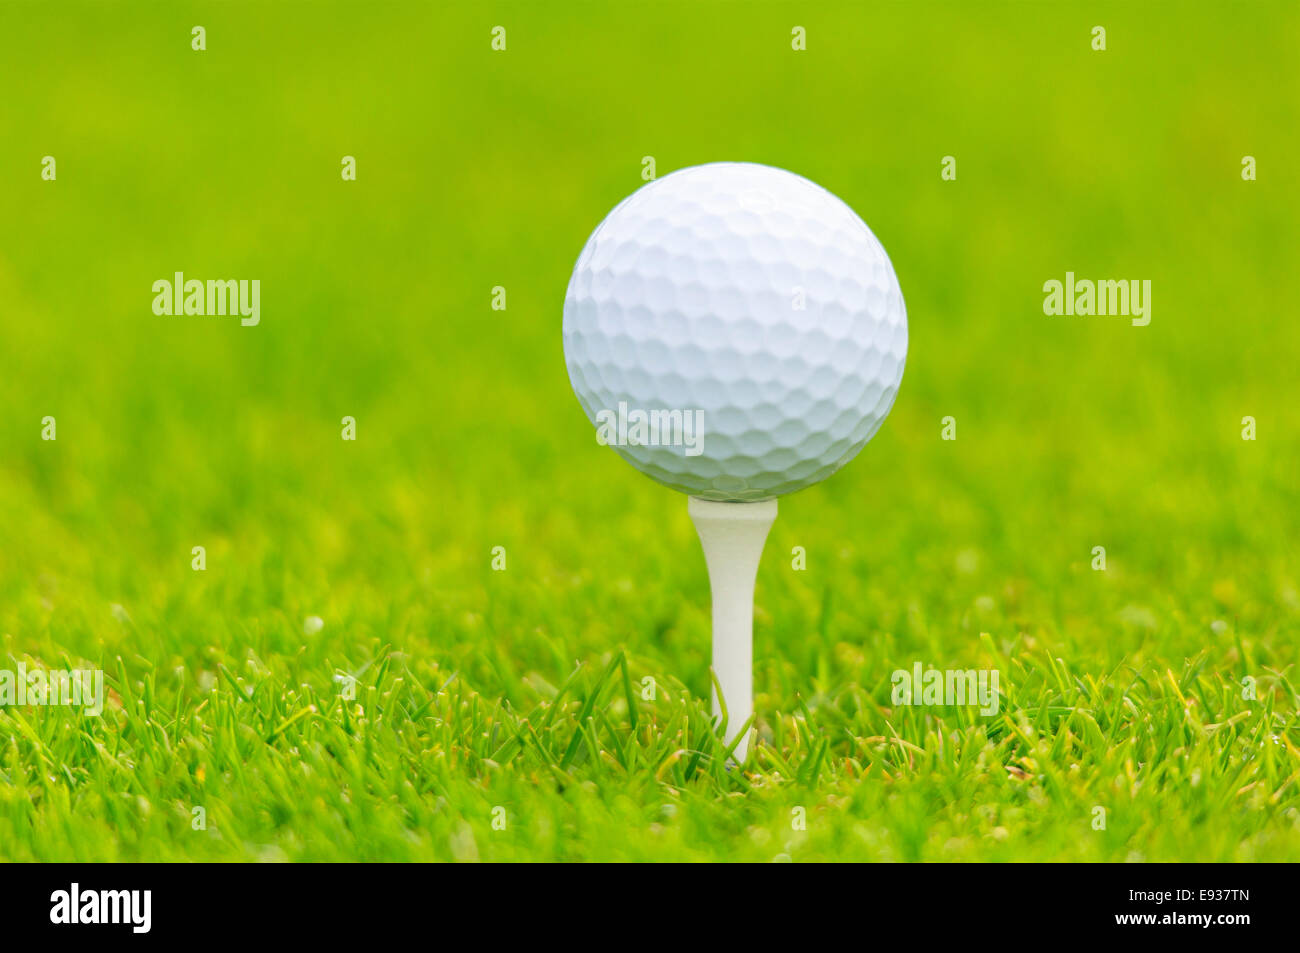 golf ball on tee Stock Photo